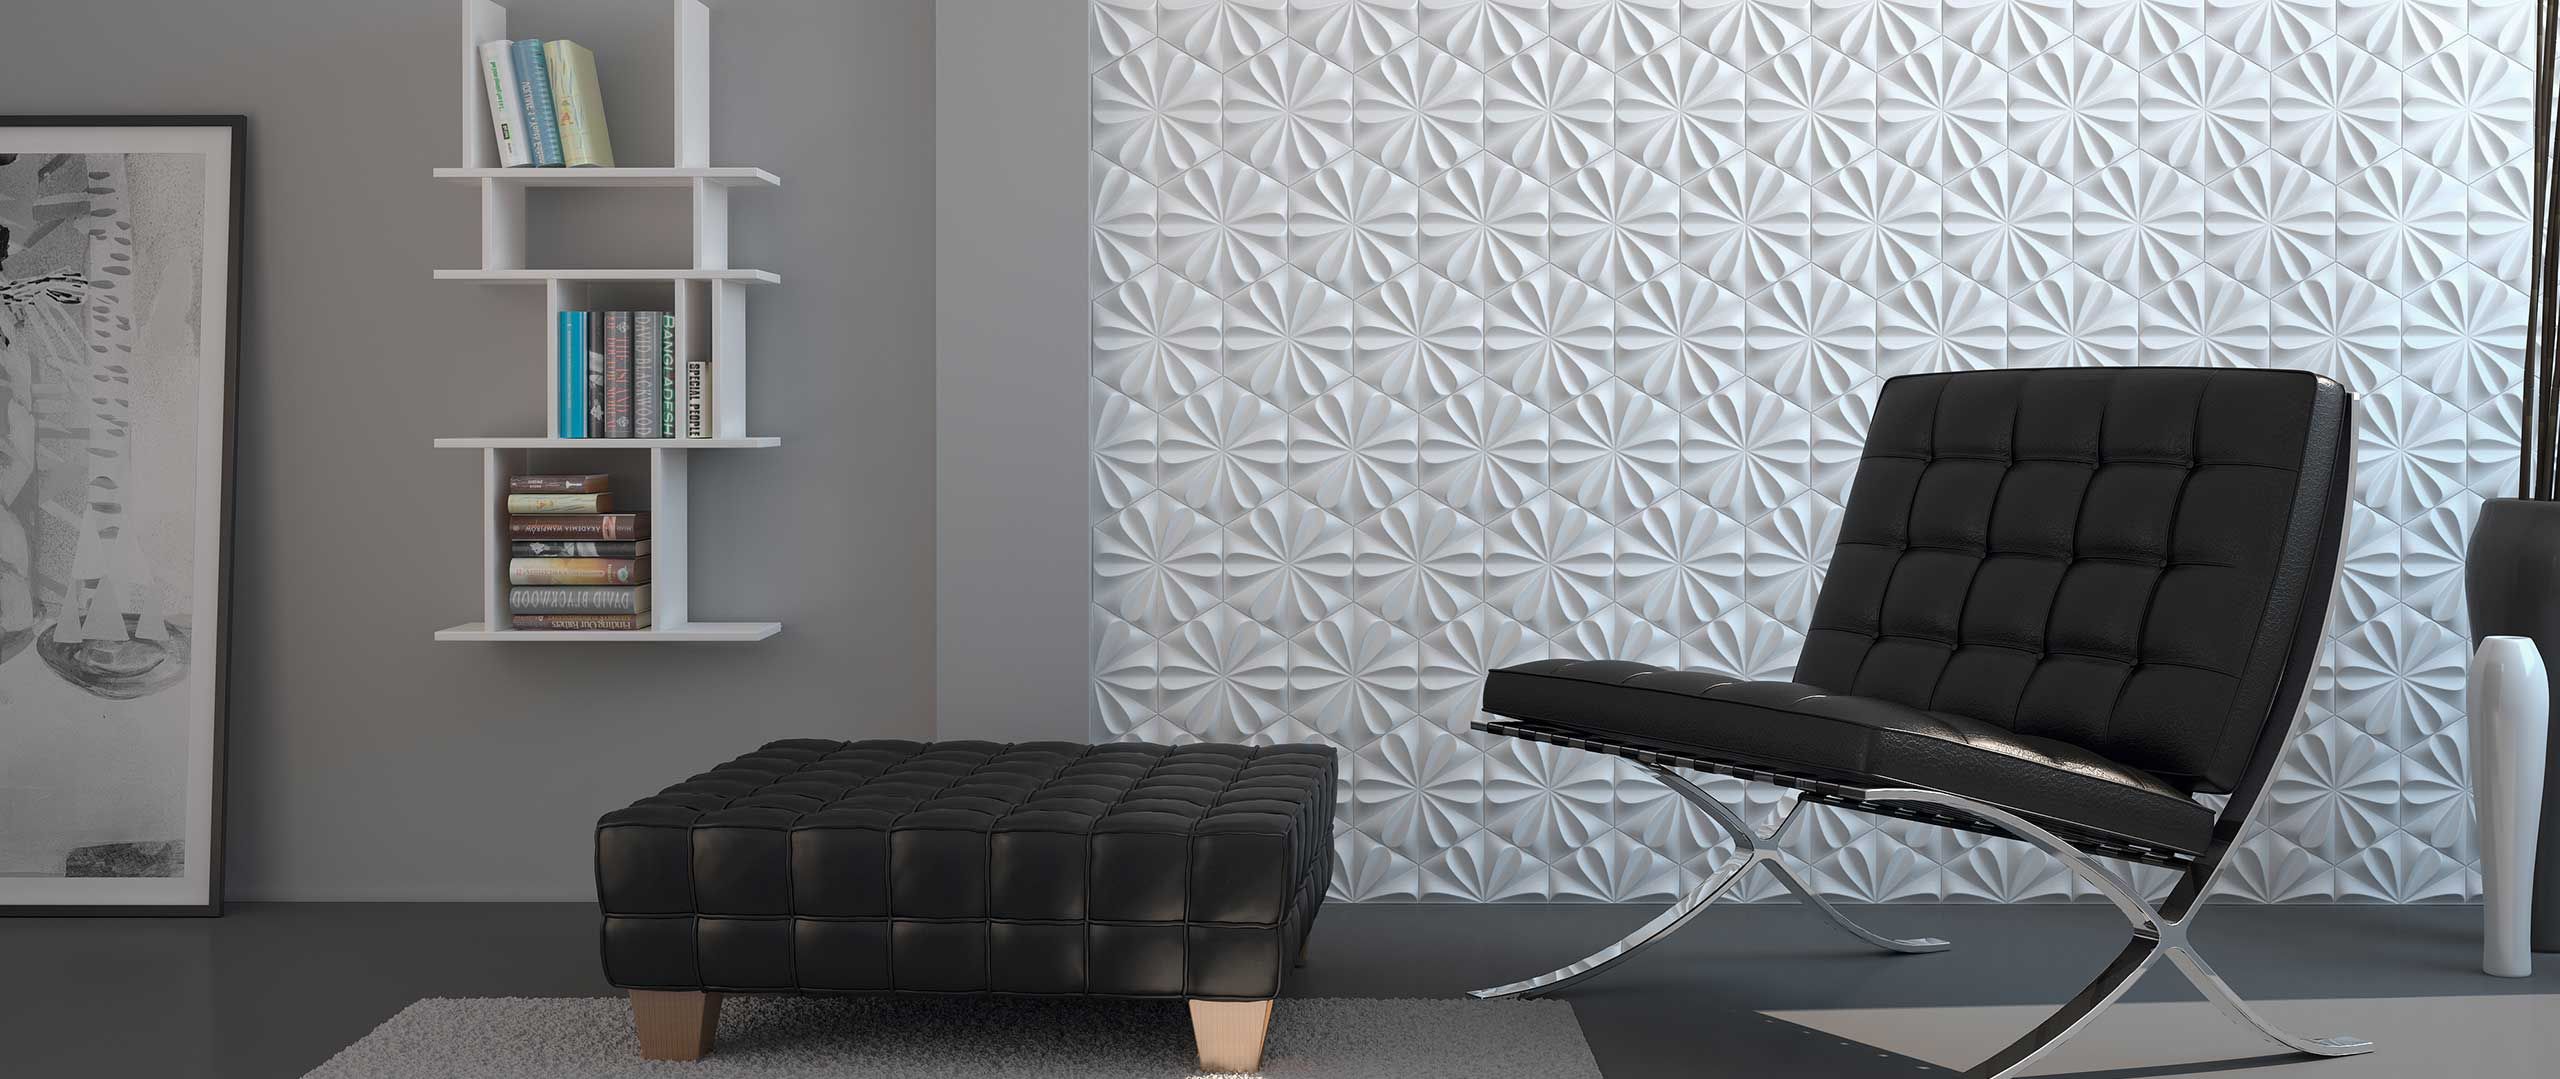 Los paneles de azulejos en 3D son tendencia en decoración